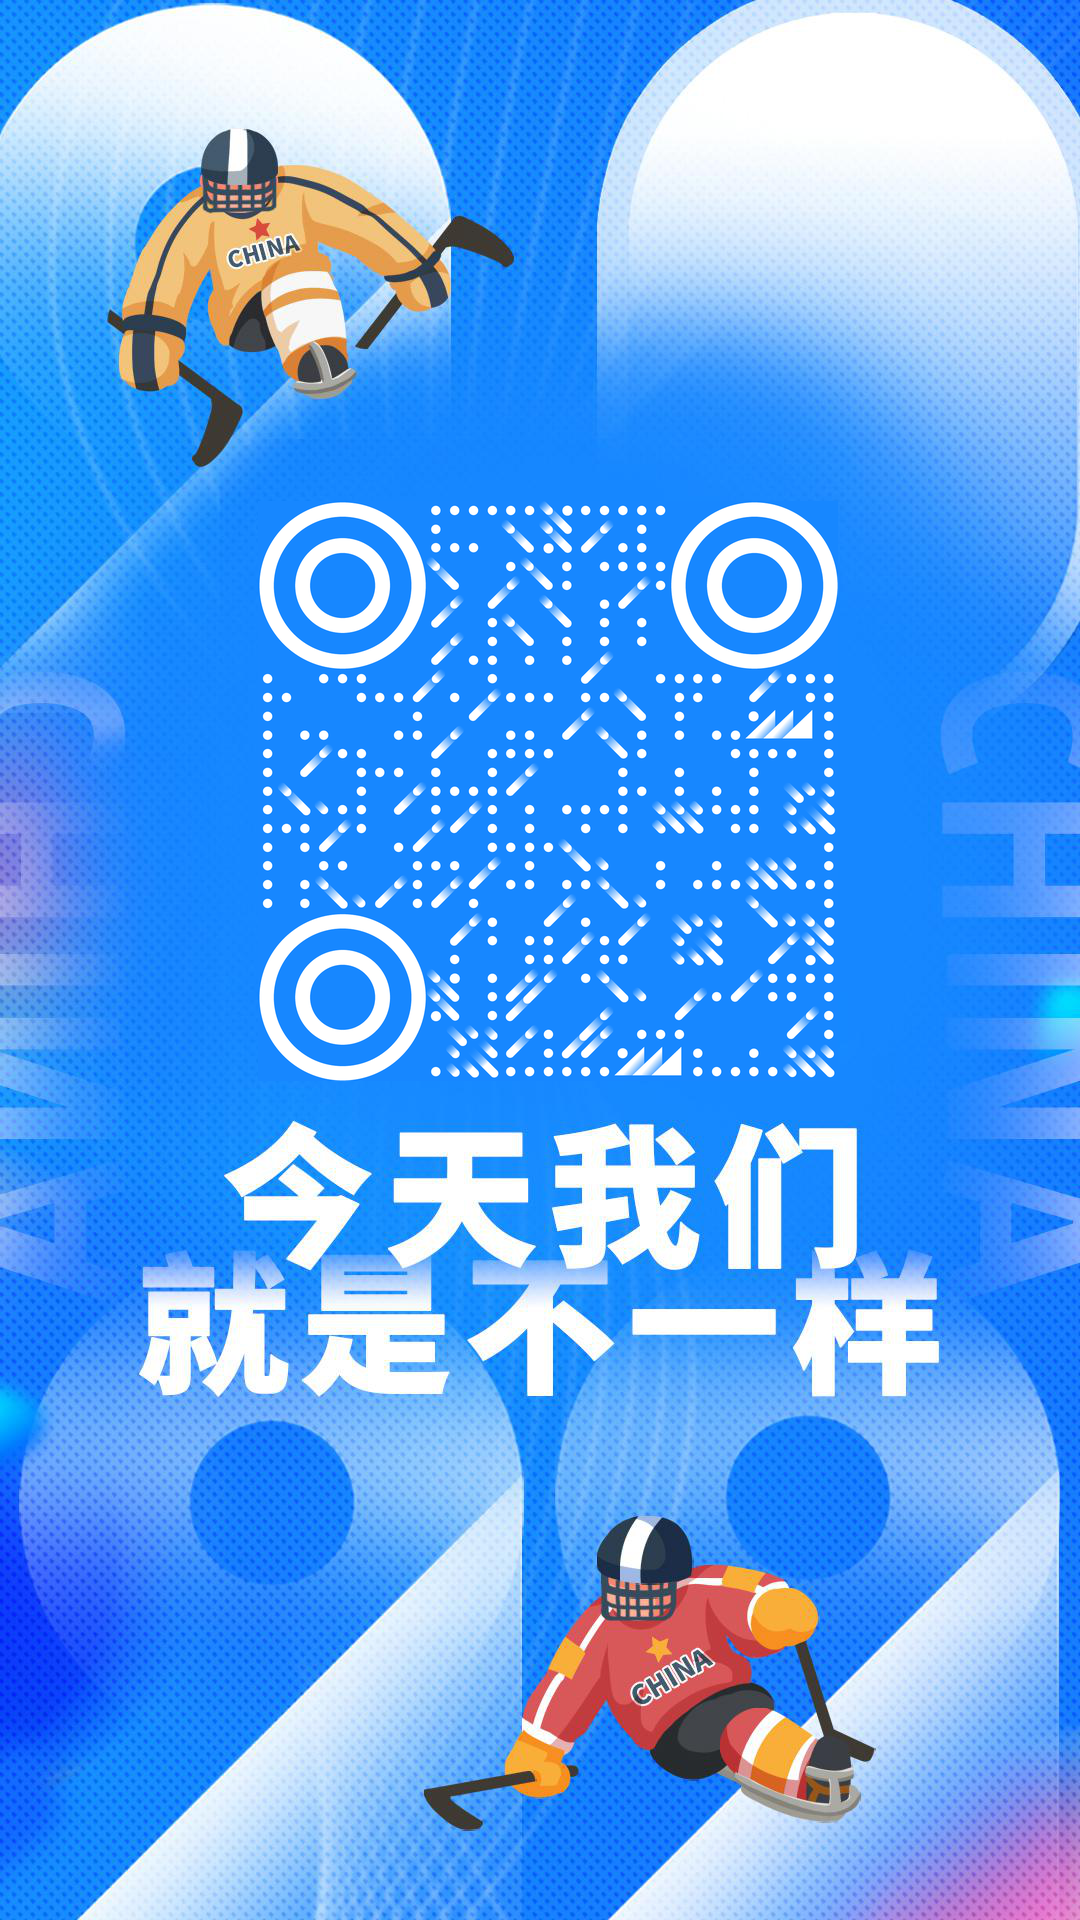 2022北京冬季残奥会我们就是不一样二维码生成器-平面静态-手机壁纸